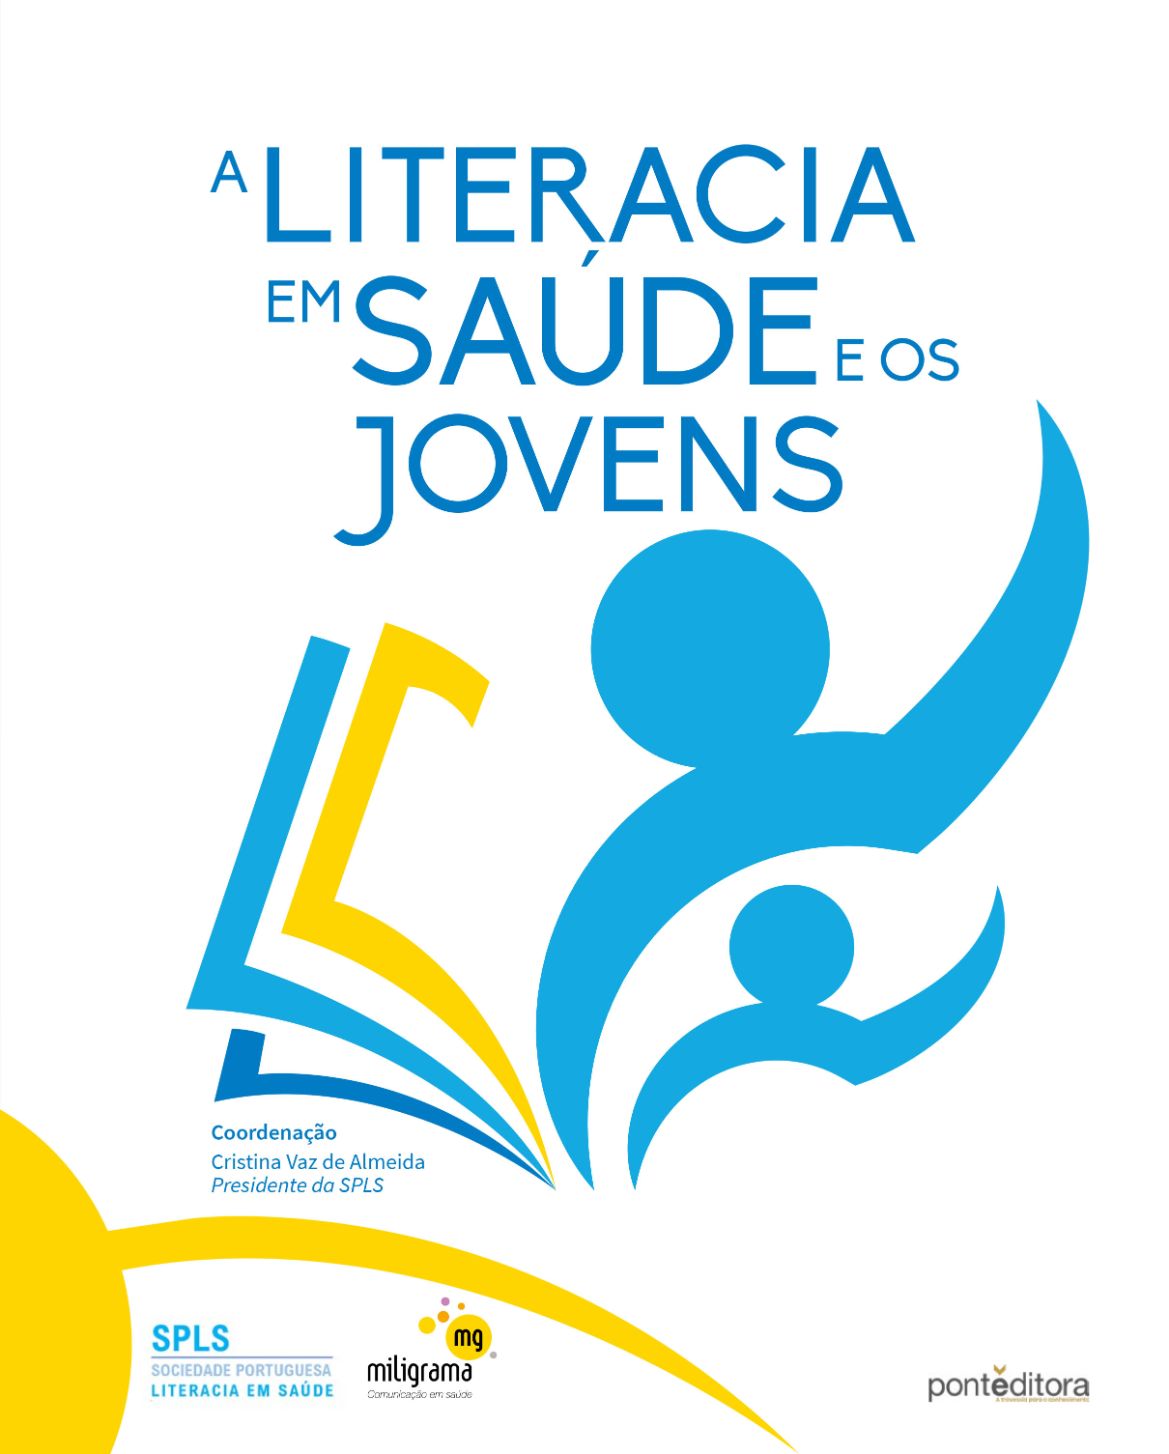 Sociedade Portuguesa de Literacia em Saúde promove E-Book dedicado à literacia em saúde e os jovens